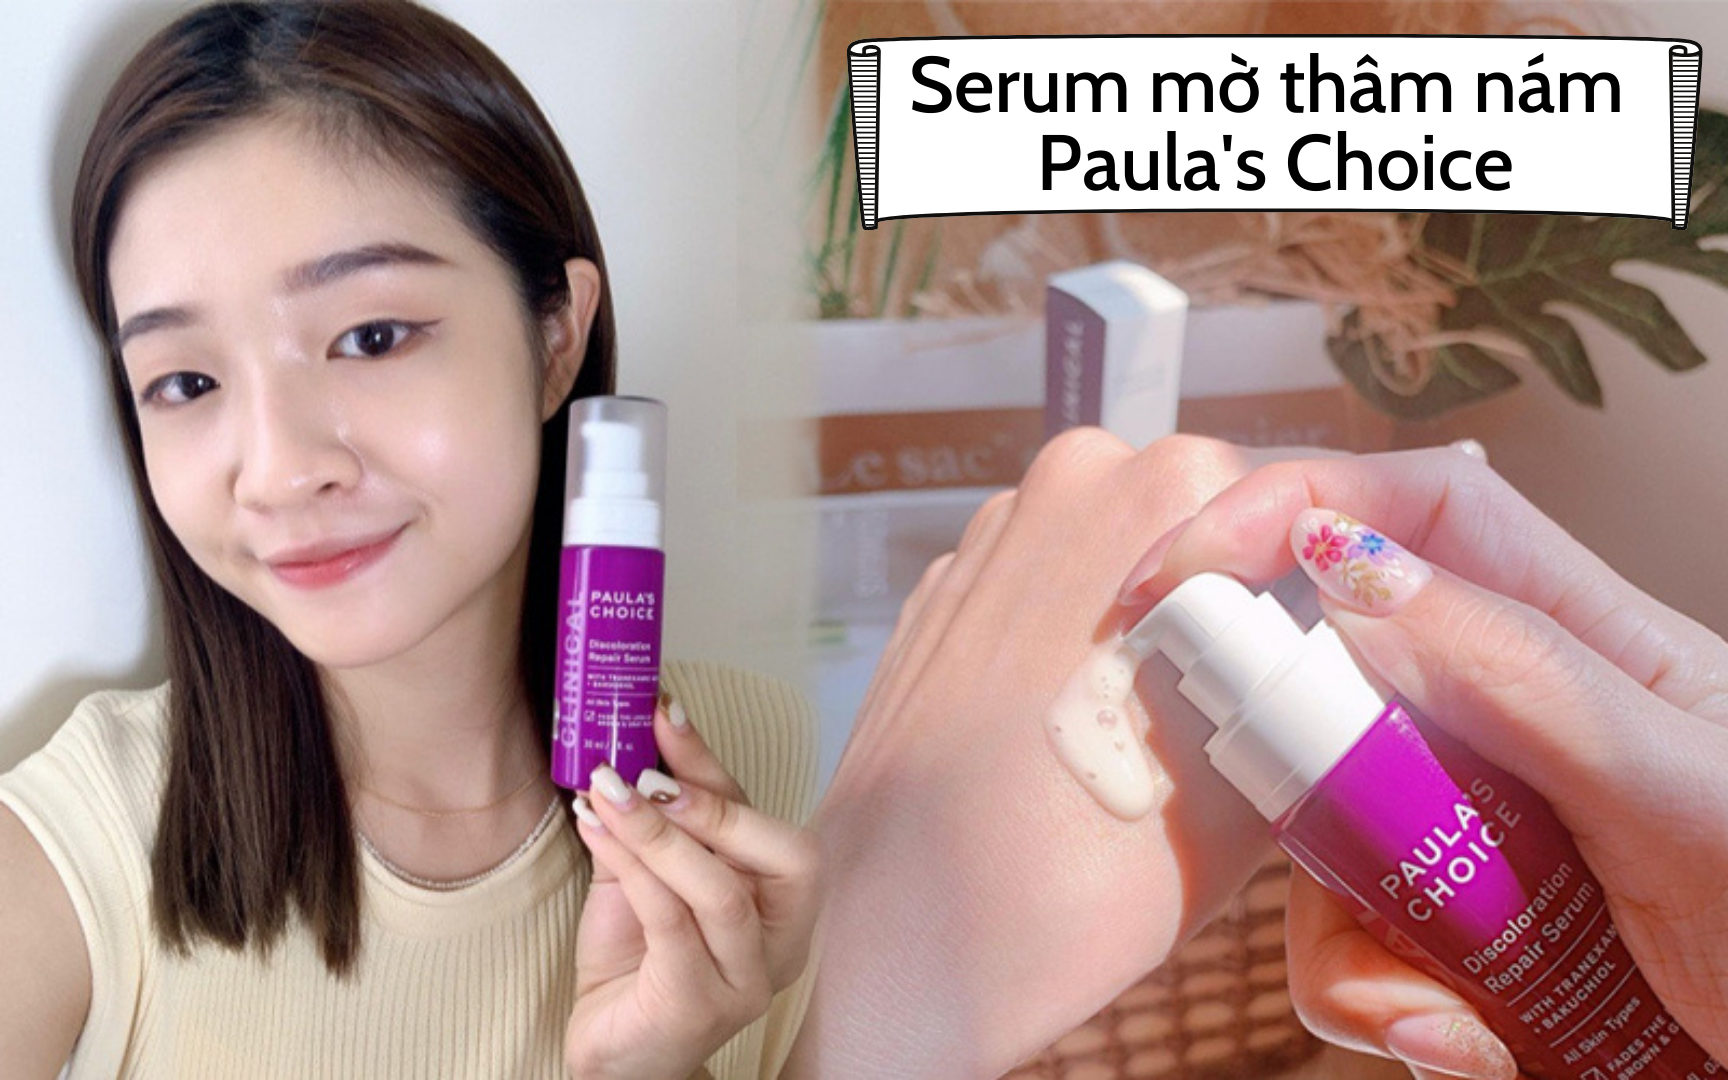 Review serum mờ thâm nám Paula's Choice: Dịu nhẹ, sáng da sau 2 tuần nhưng có 1 điều cần cân nhắc